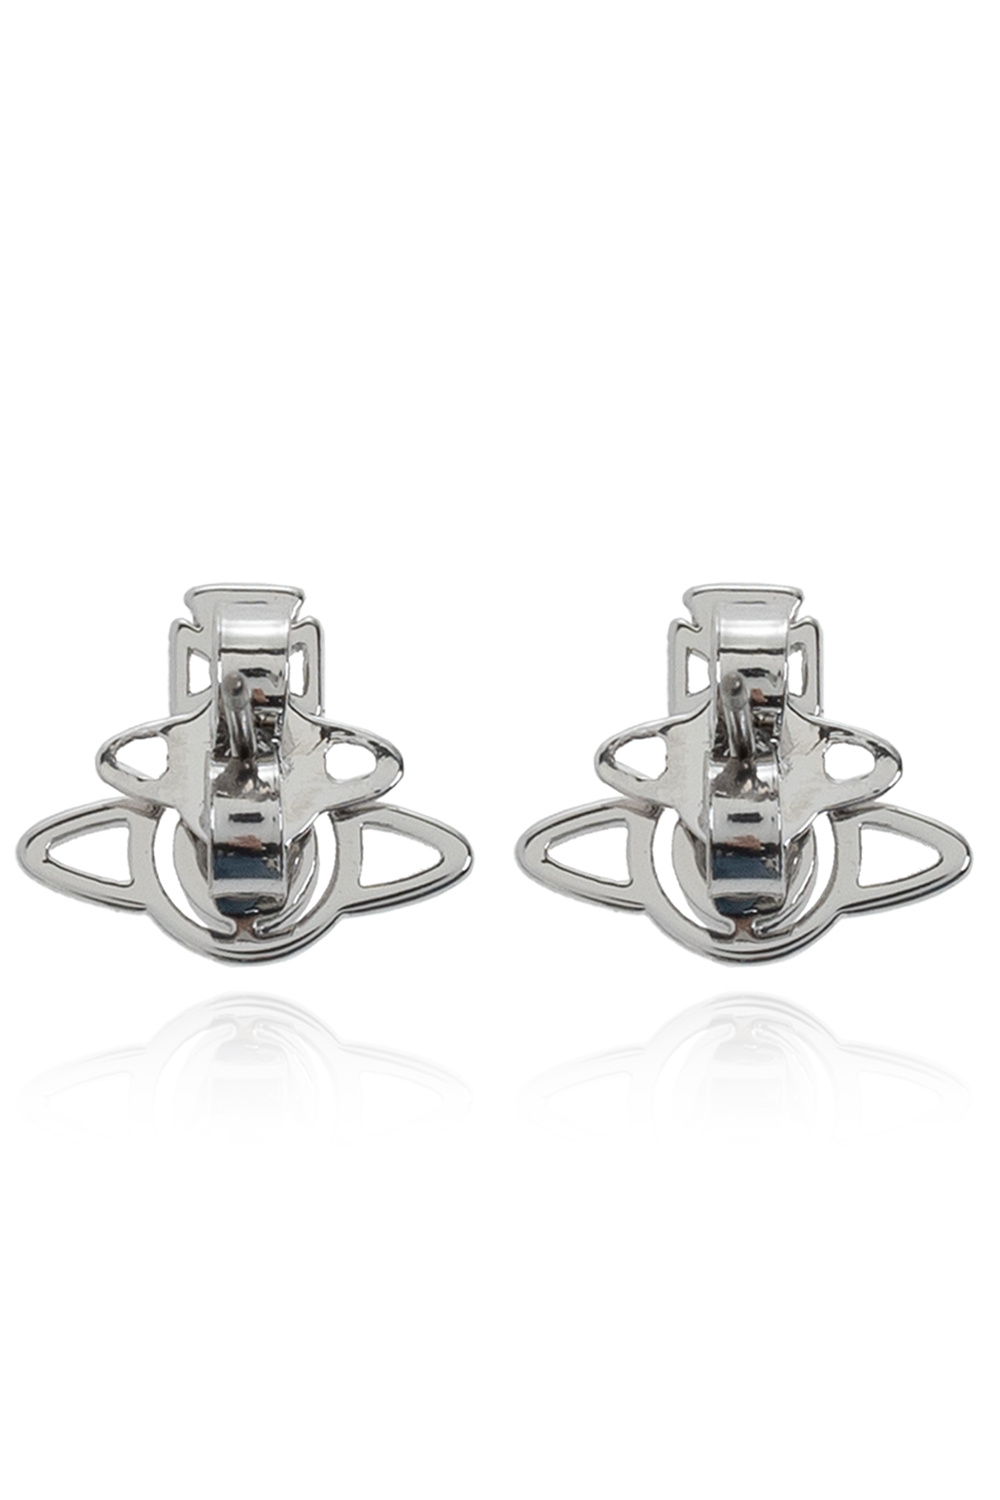 Vivienne Westwood ‘Nora’ earrings